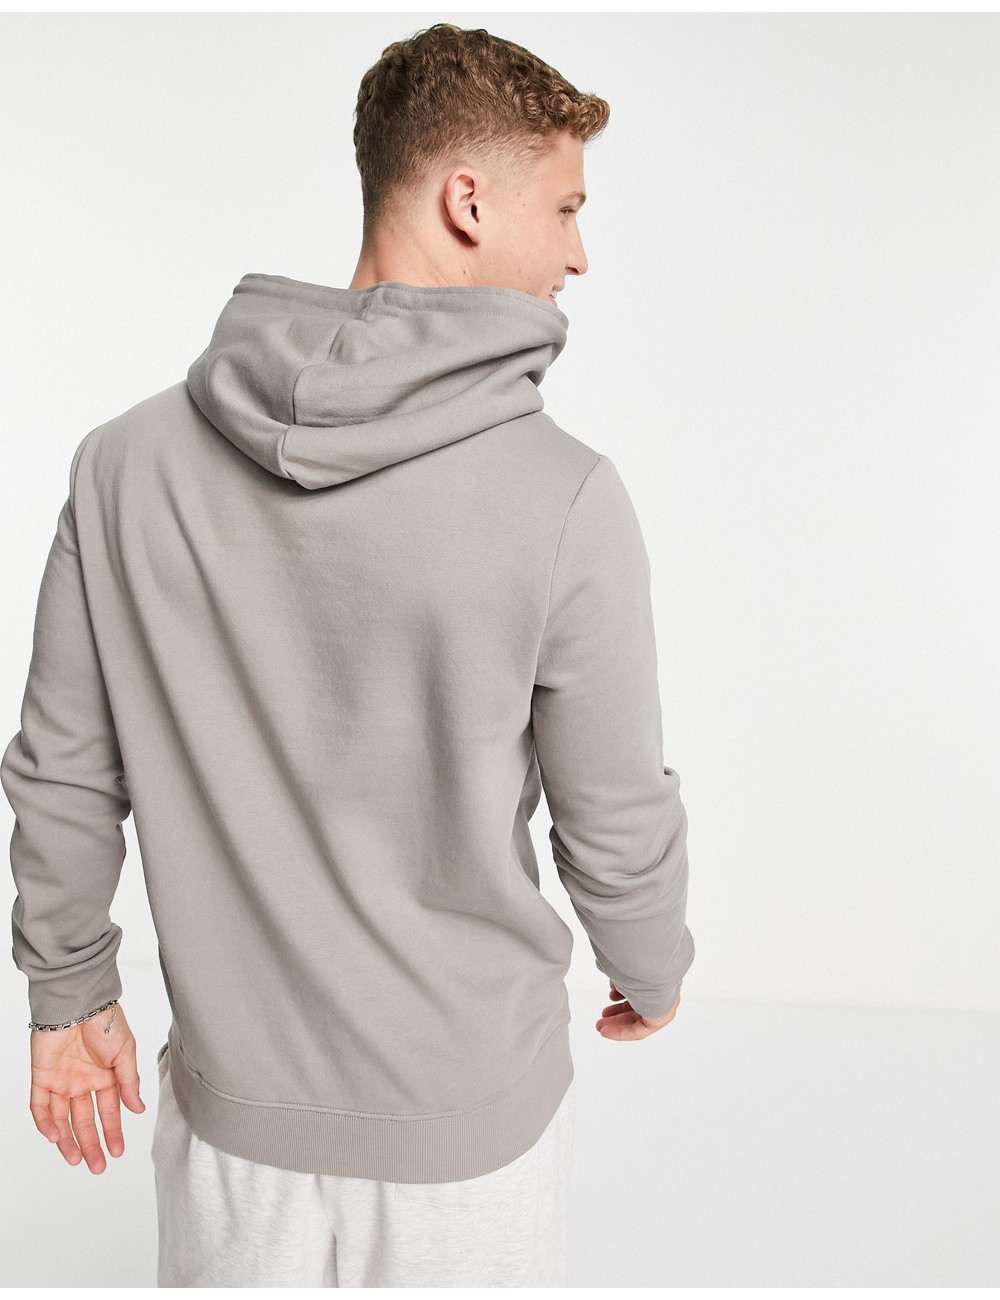 New Look hoodie in light grey